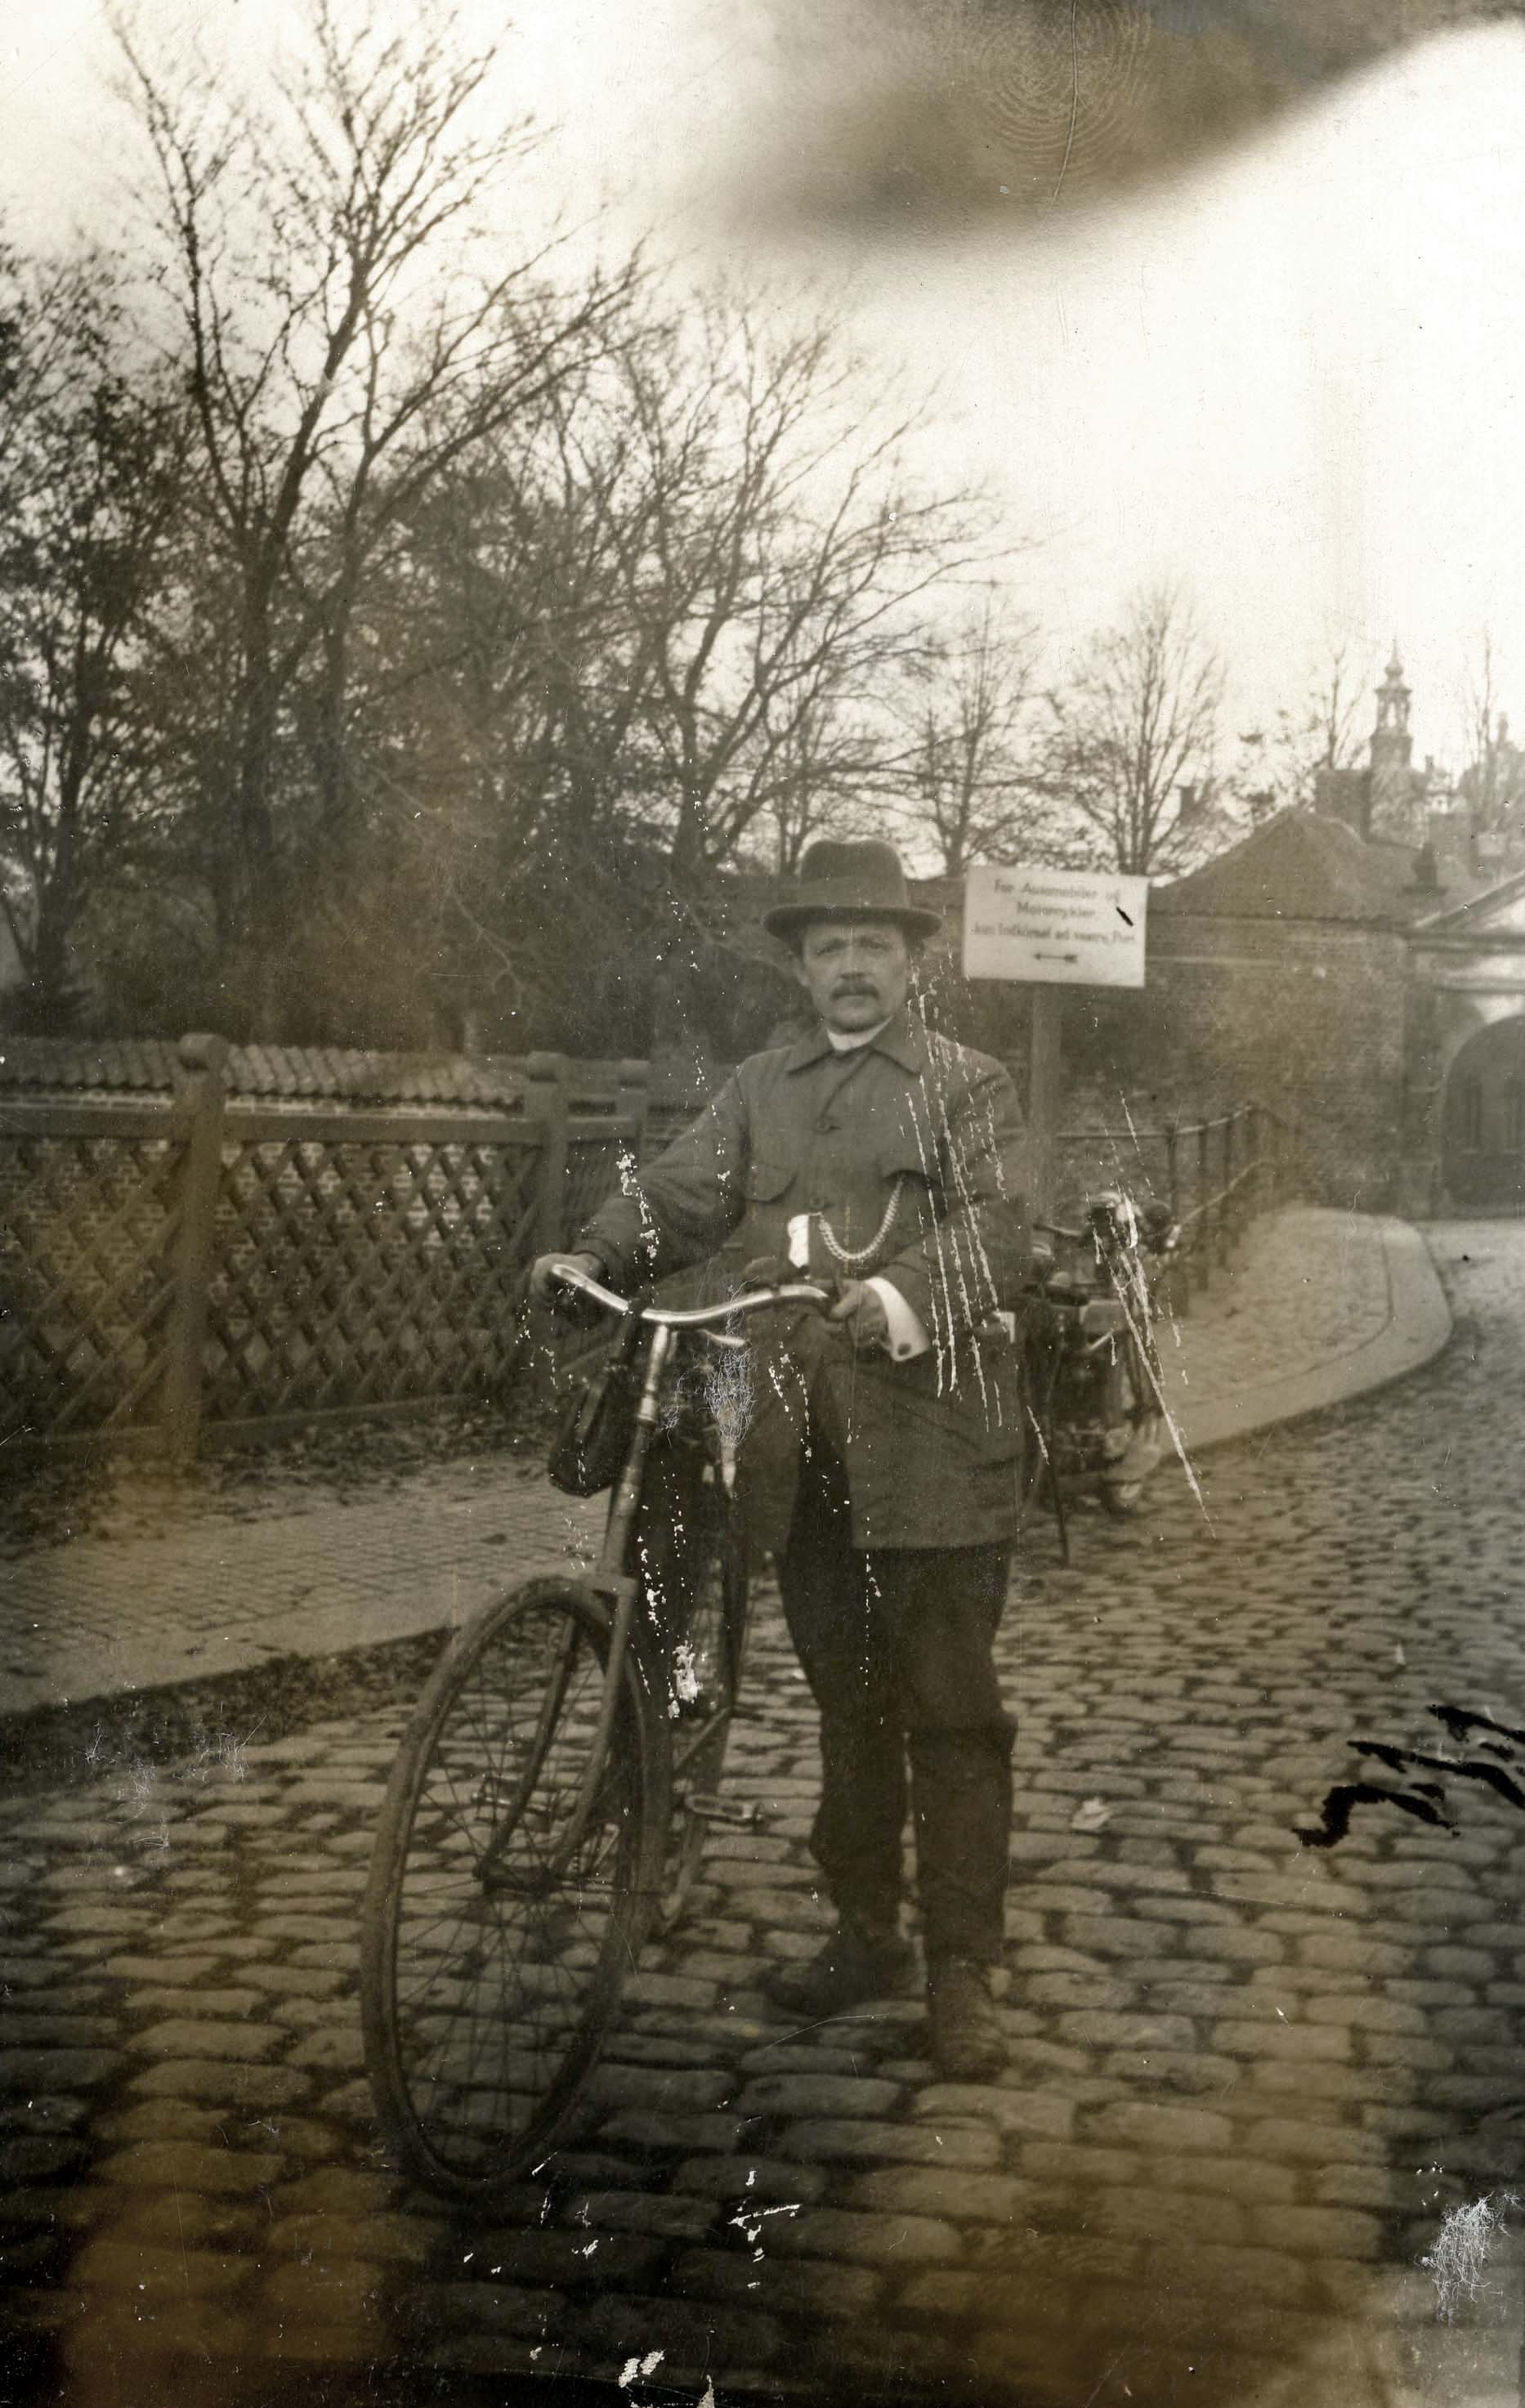 Mand med cykel fotograferet ved indgangen til slottet